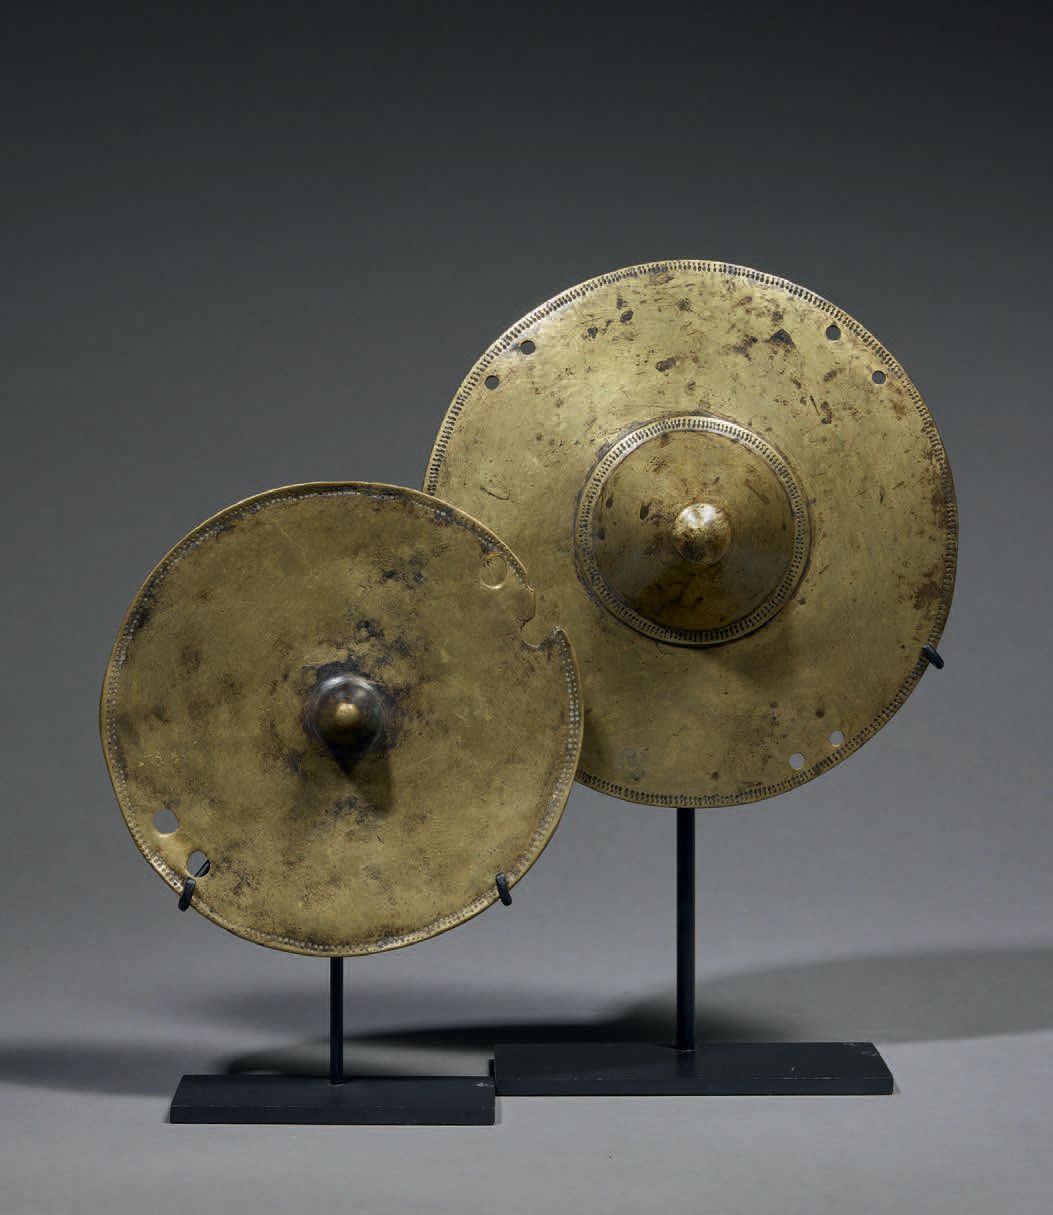 Null 两件康索装饰品
埃塞俄比亚
青铜器
直径15.5和17厘米
形状像一个圆盘，中间有一个圆锥形的附属物。周围有一个雕刻的装饰。一系列的穿孔被用来固定装饰&hellip;